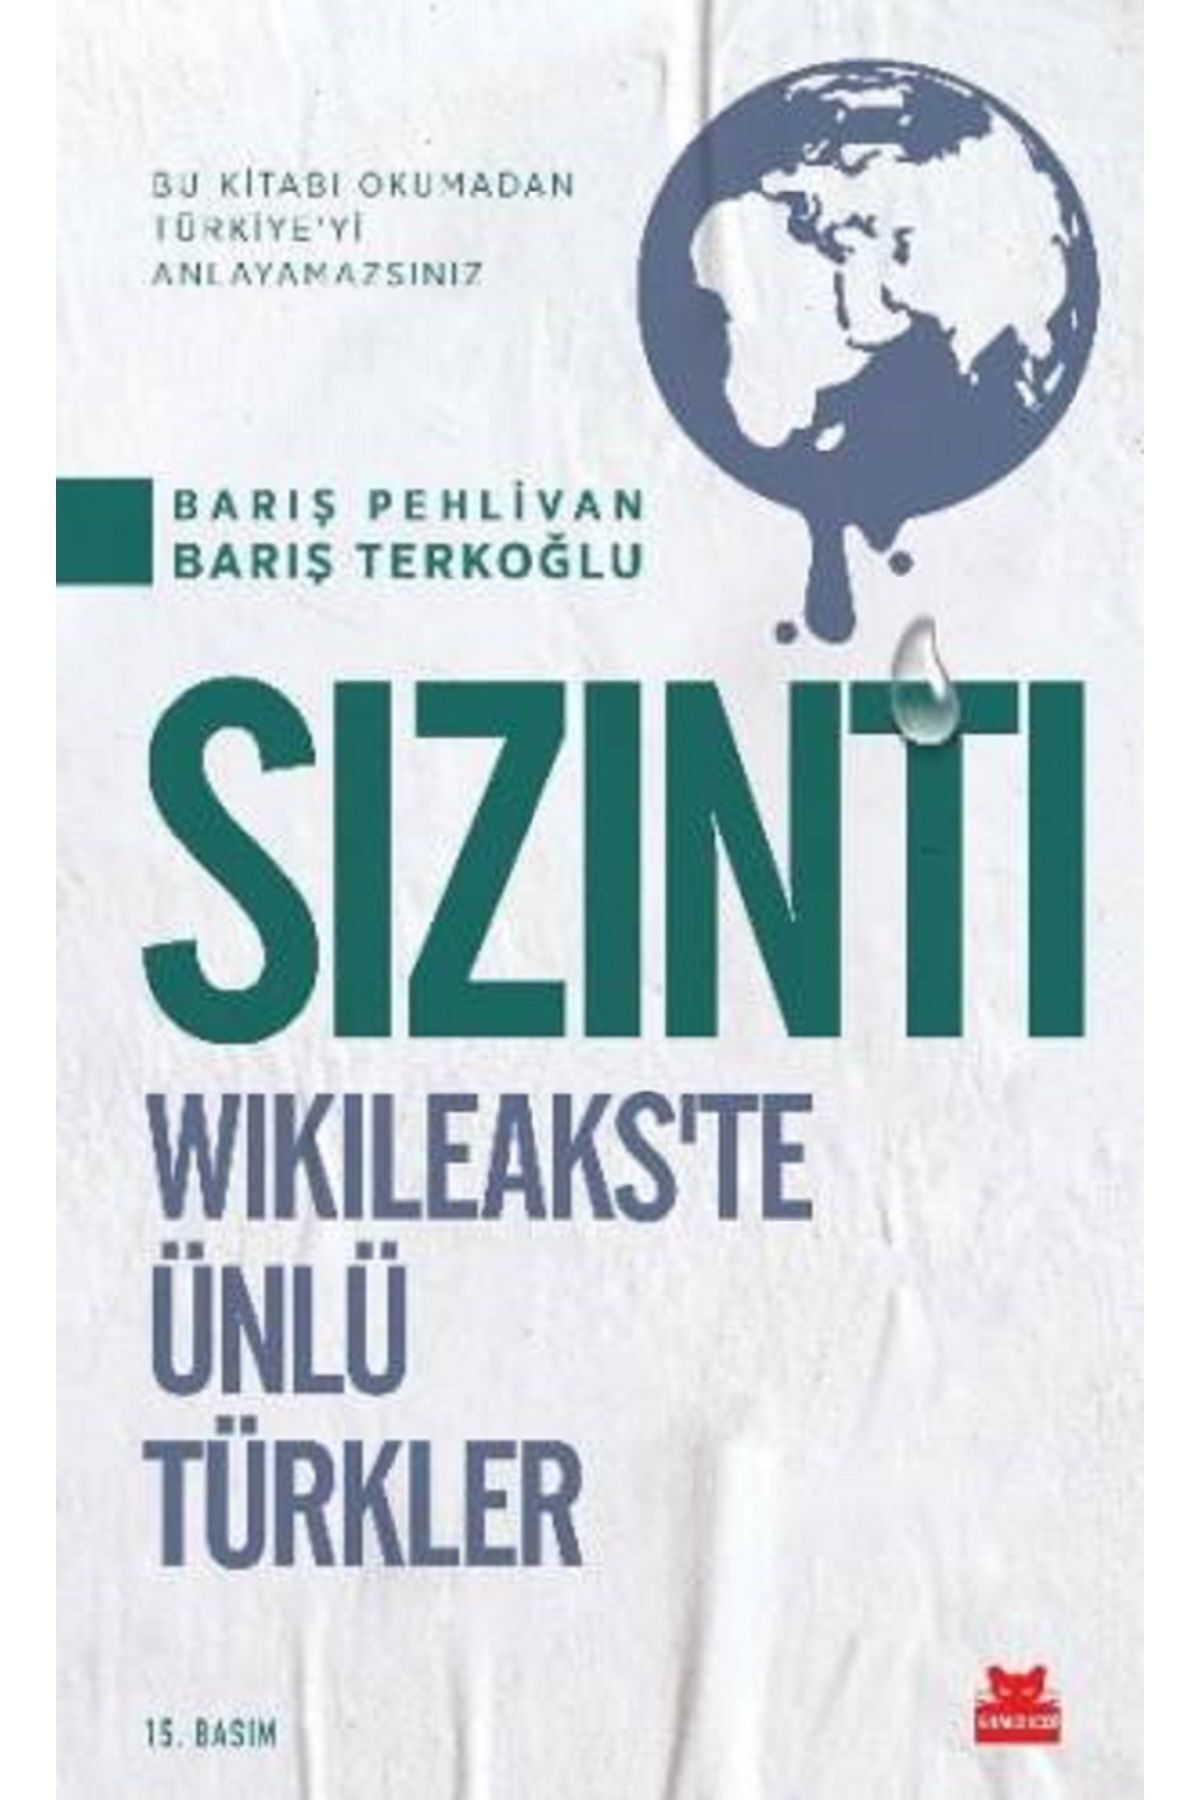 Kırmızı Kedi Yayınları Sızıntı Wikileaks'te Ünlü Türkler  Bu Kitabı Okumadan Türkiye'yi Anlayamazsınız